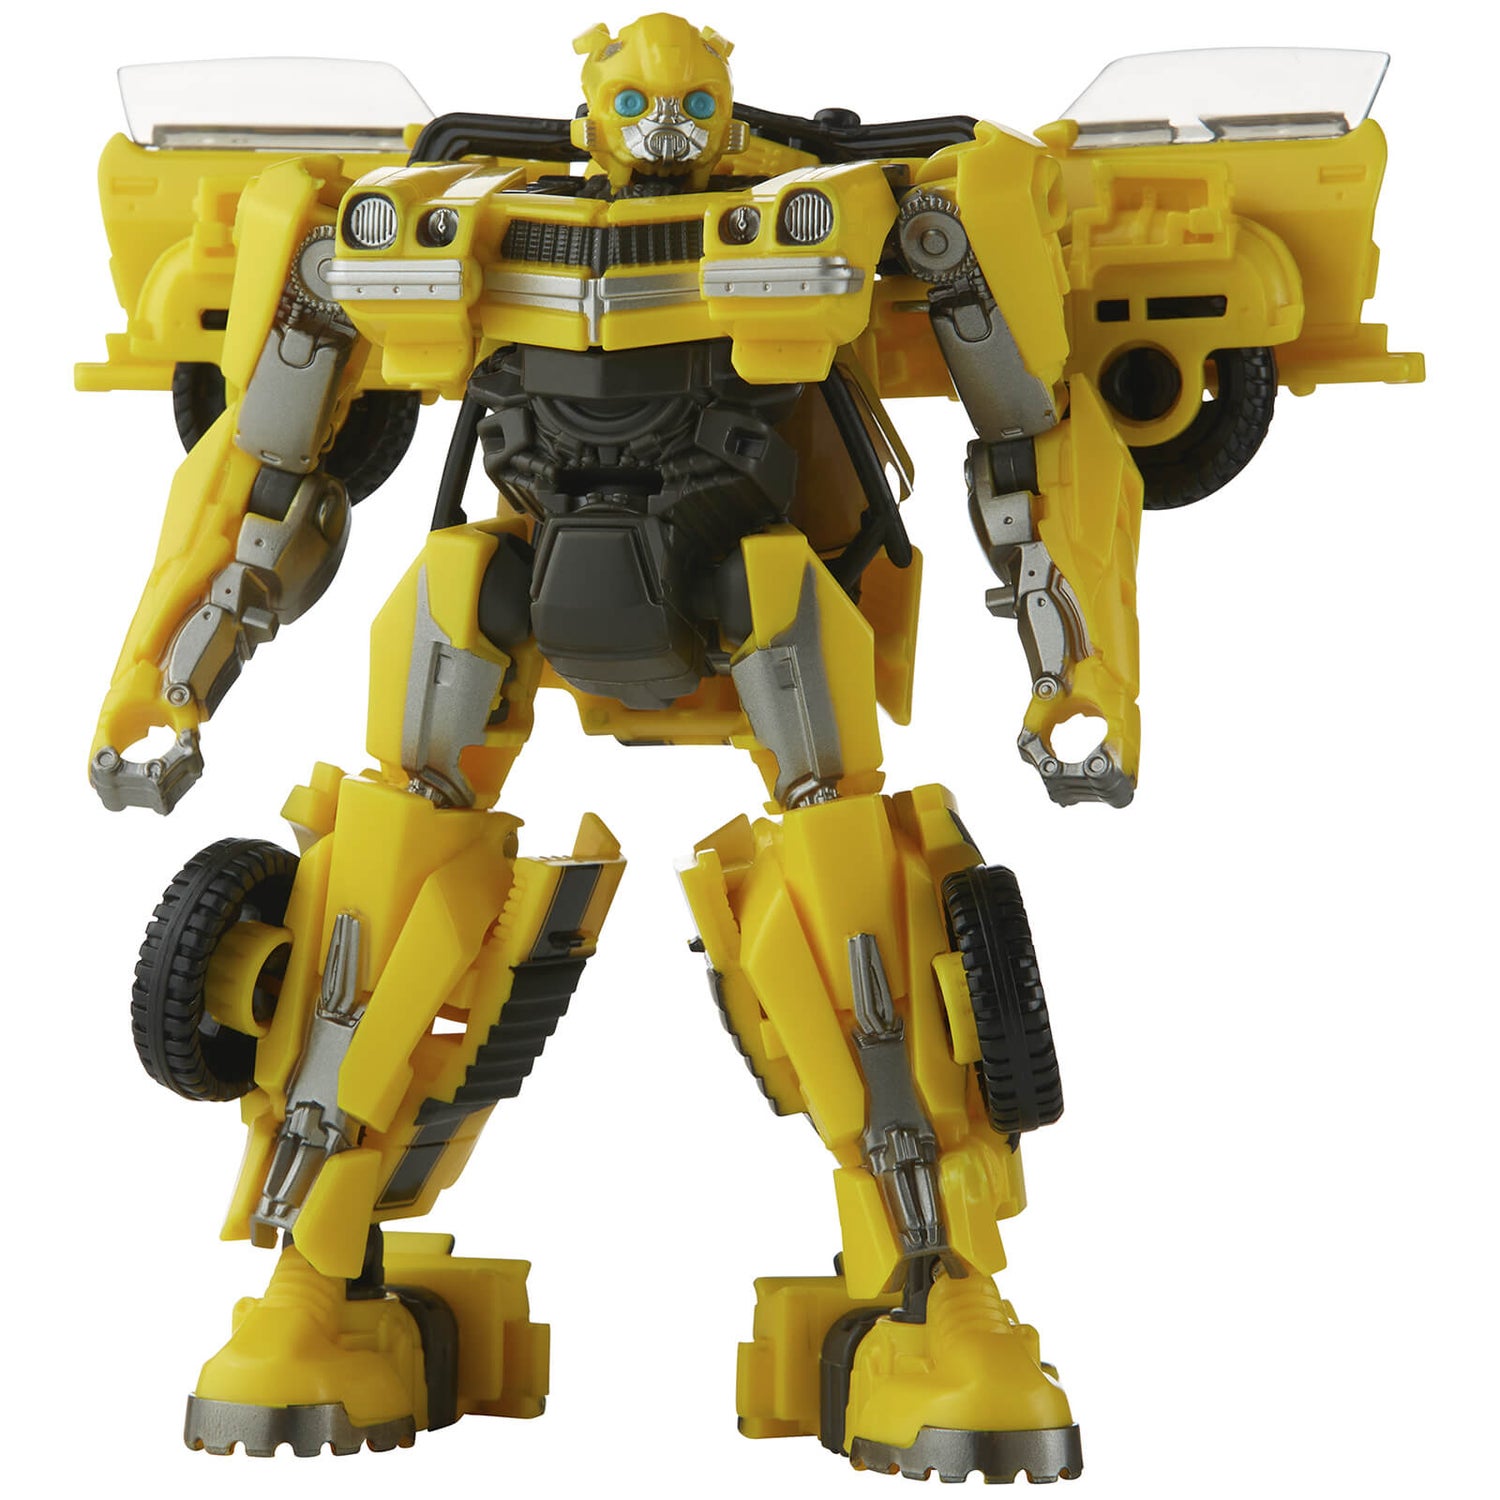 Hasbro Transformers Studio Series Deluxe 100 Bumblebee Converting Action Figure